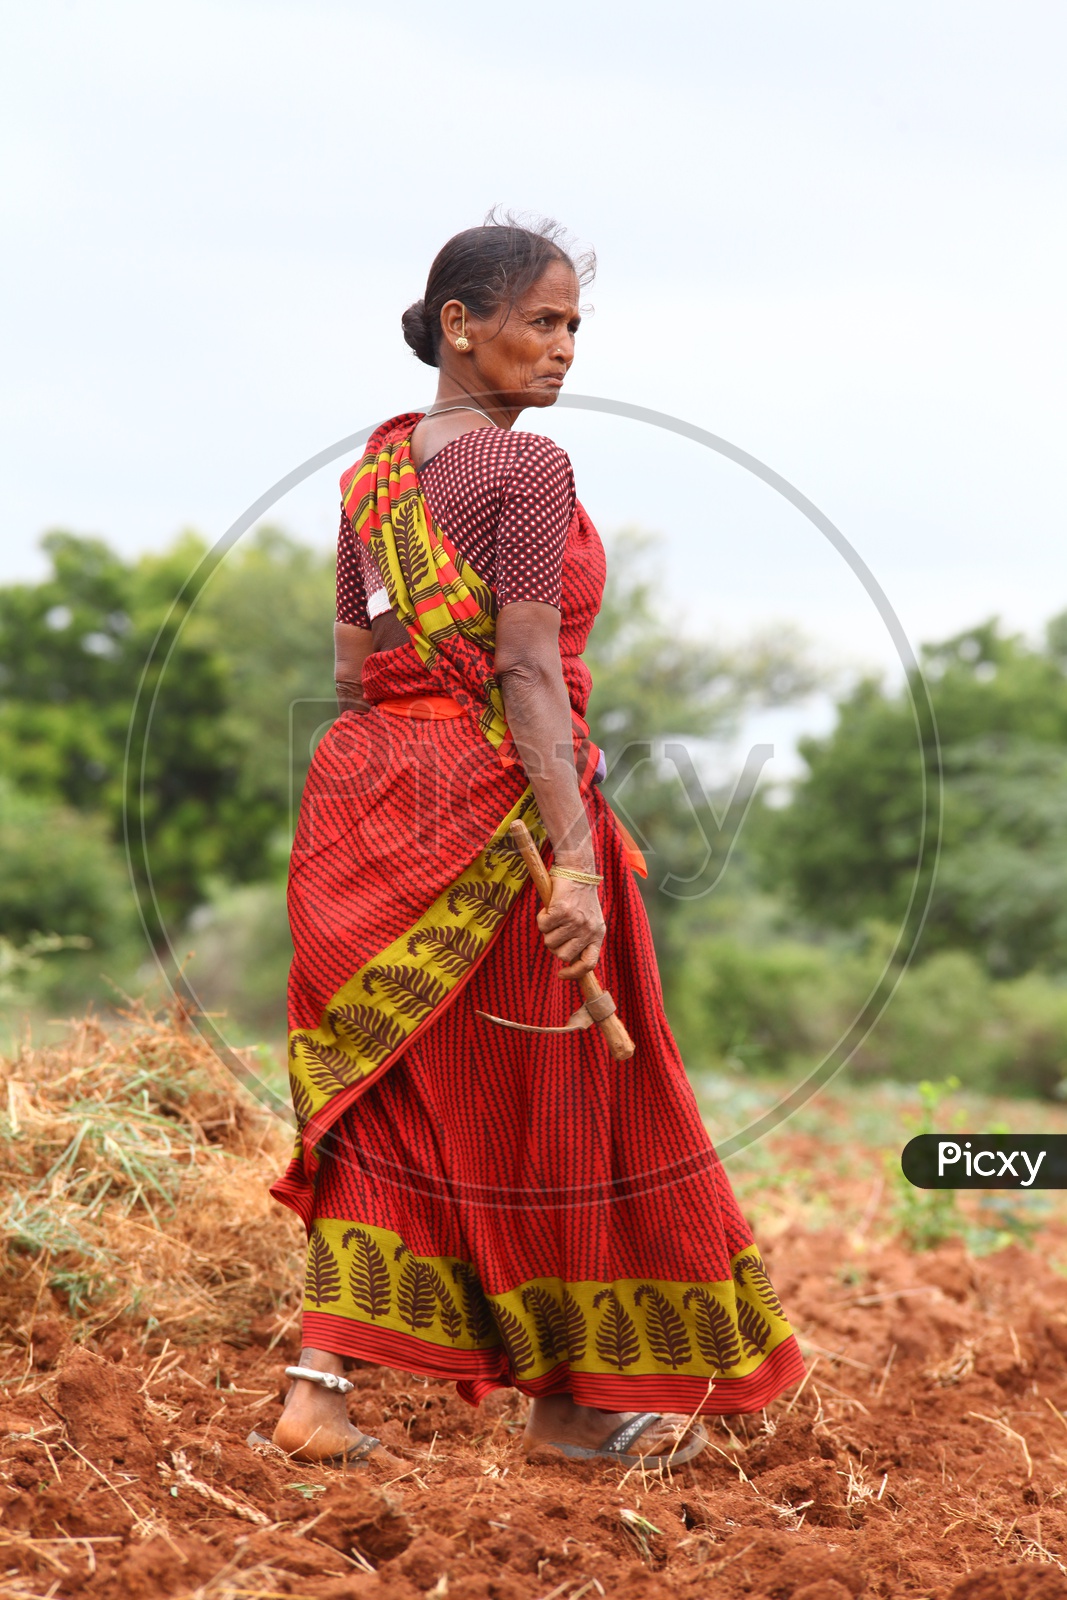 Indian farmer portrait Stock Photos, Royalty Free Indian farmer portrait  Images | Depositphotos